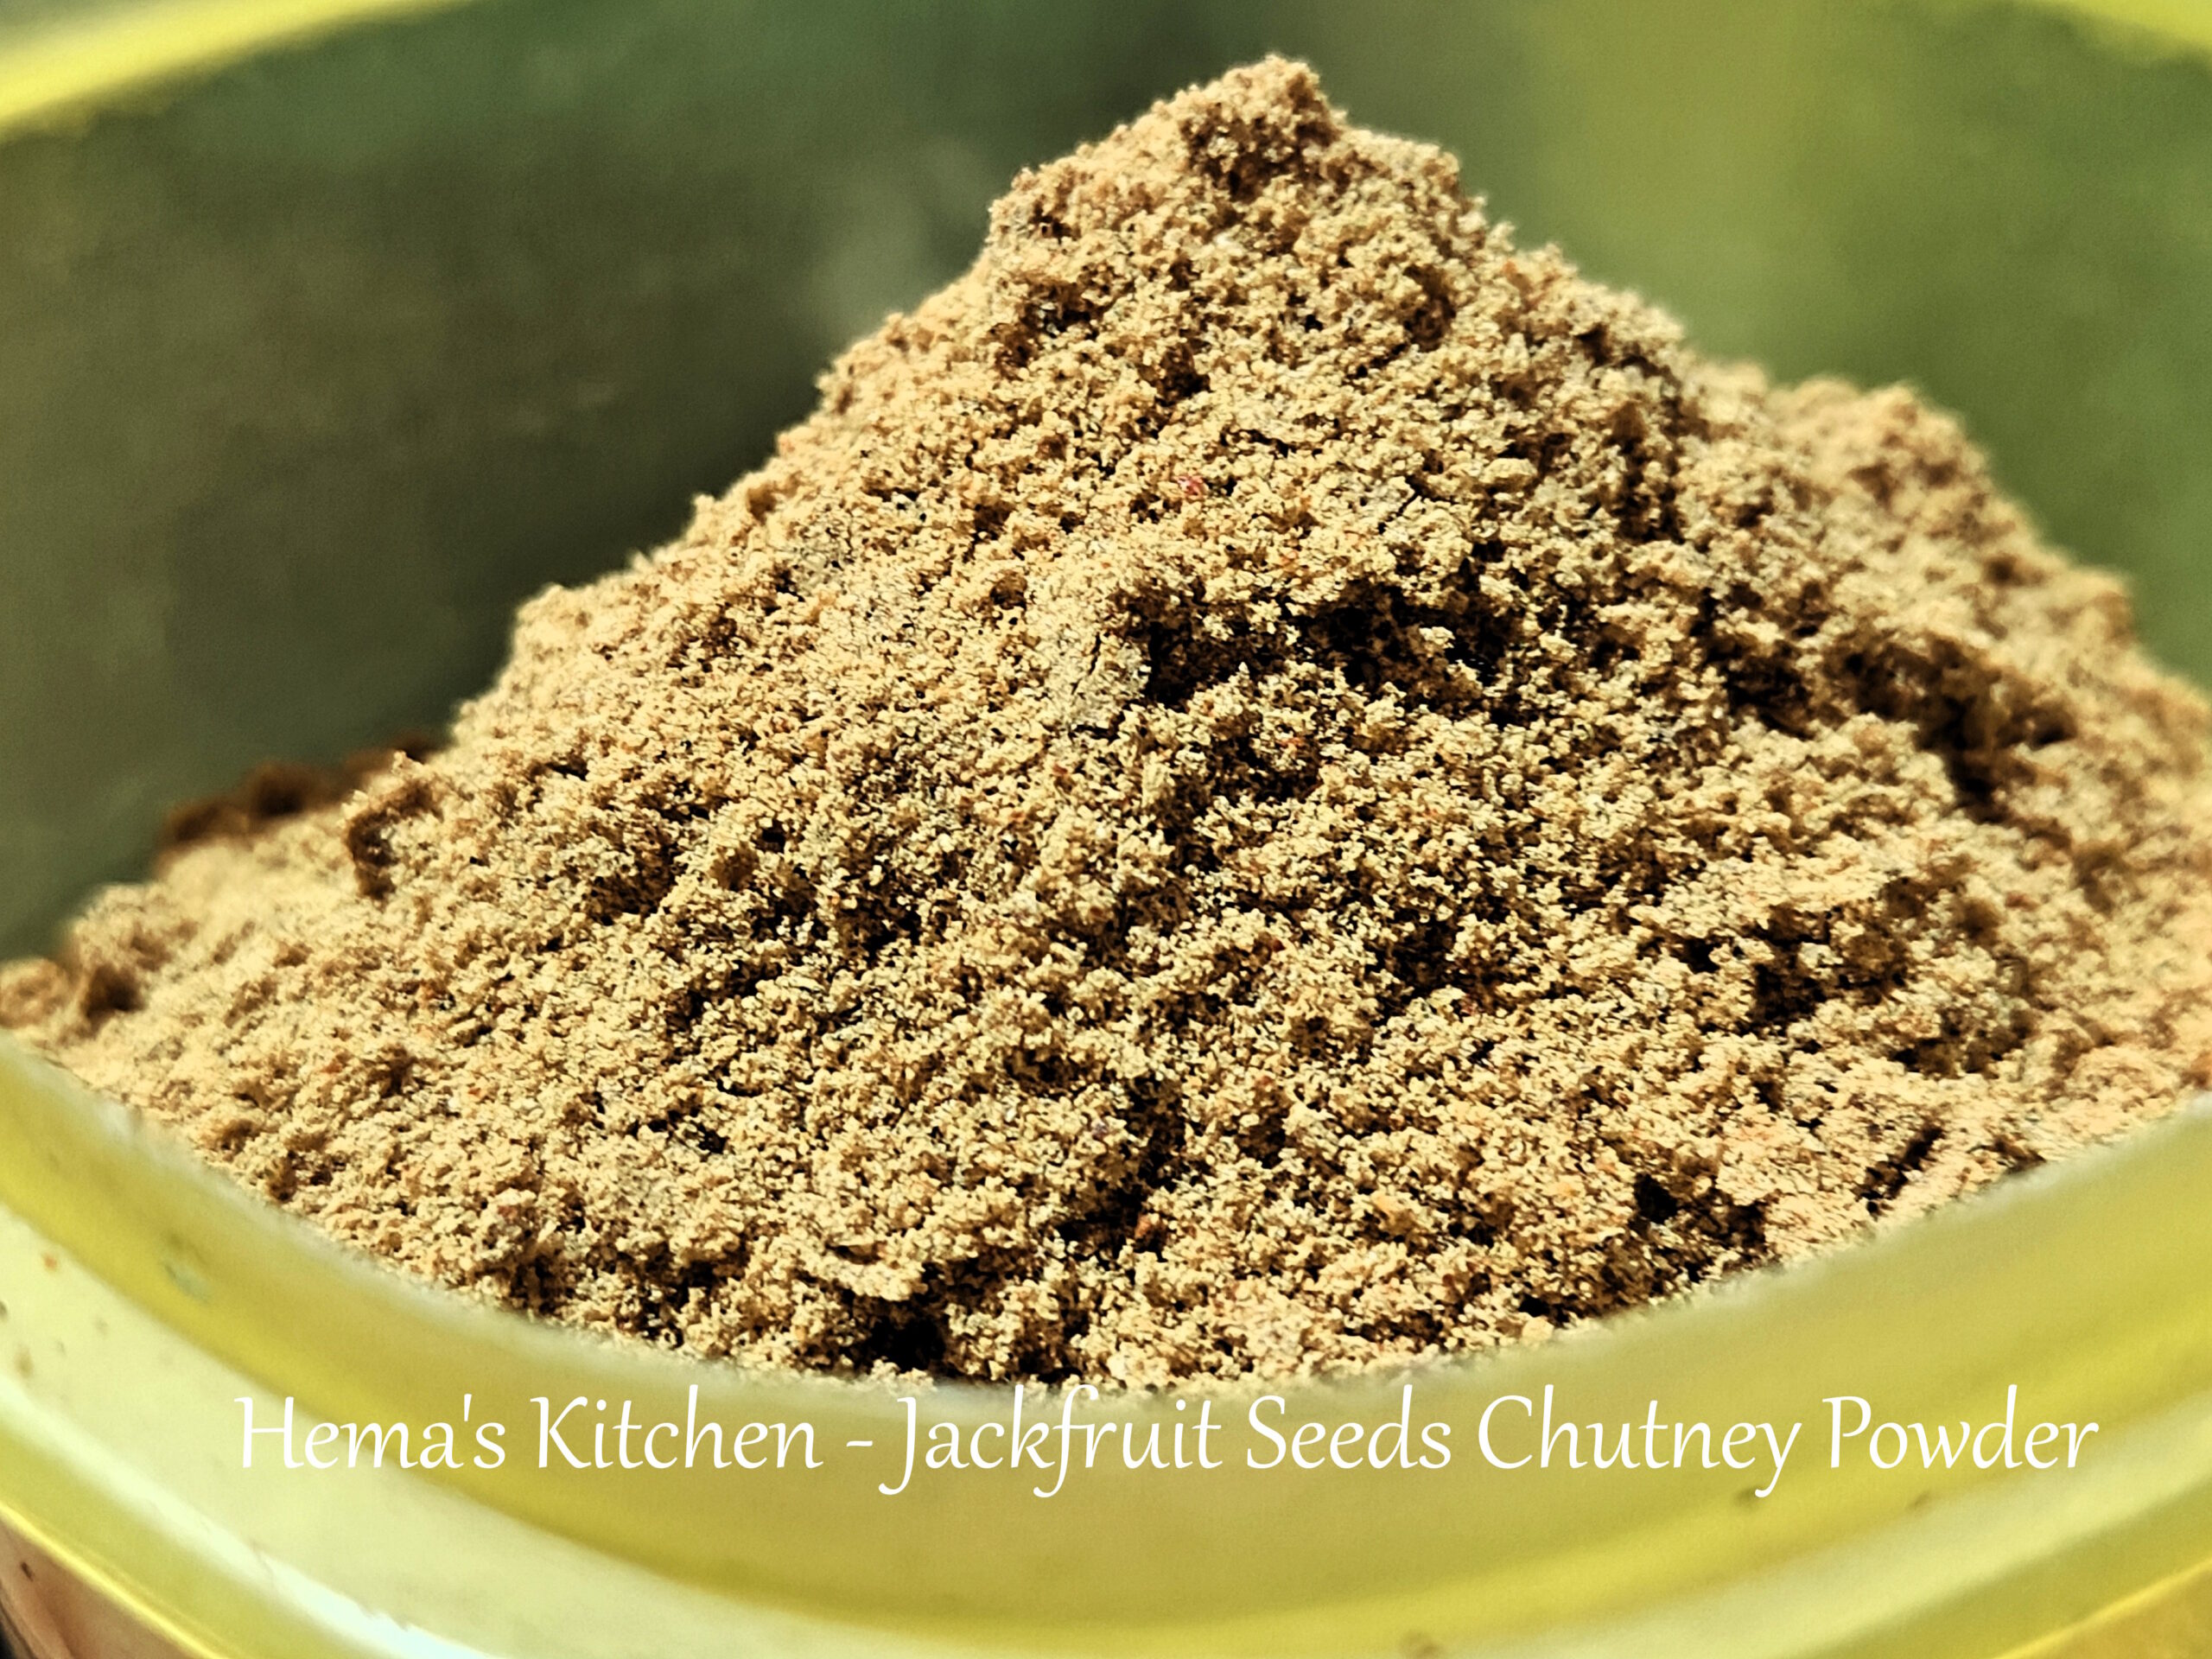 Jackfruit seeds chutney powder